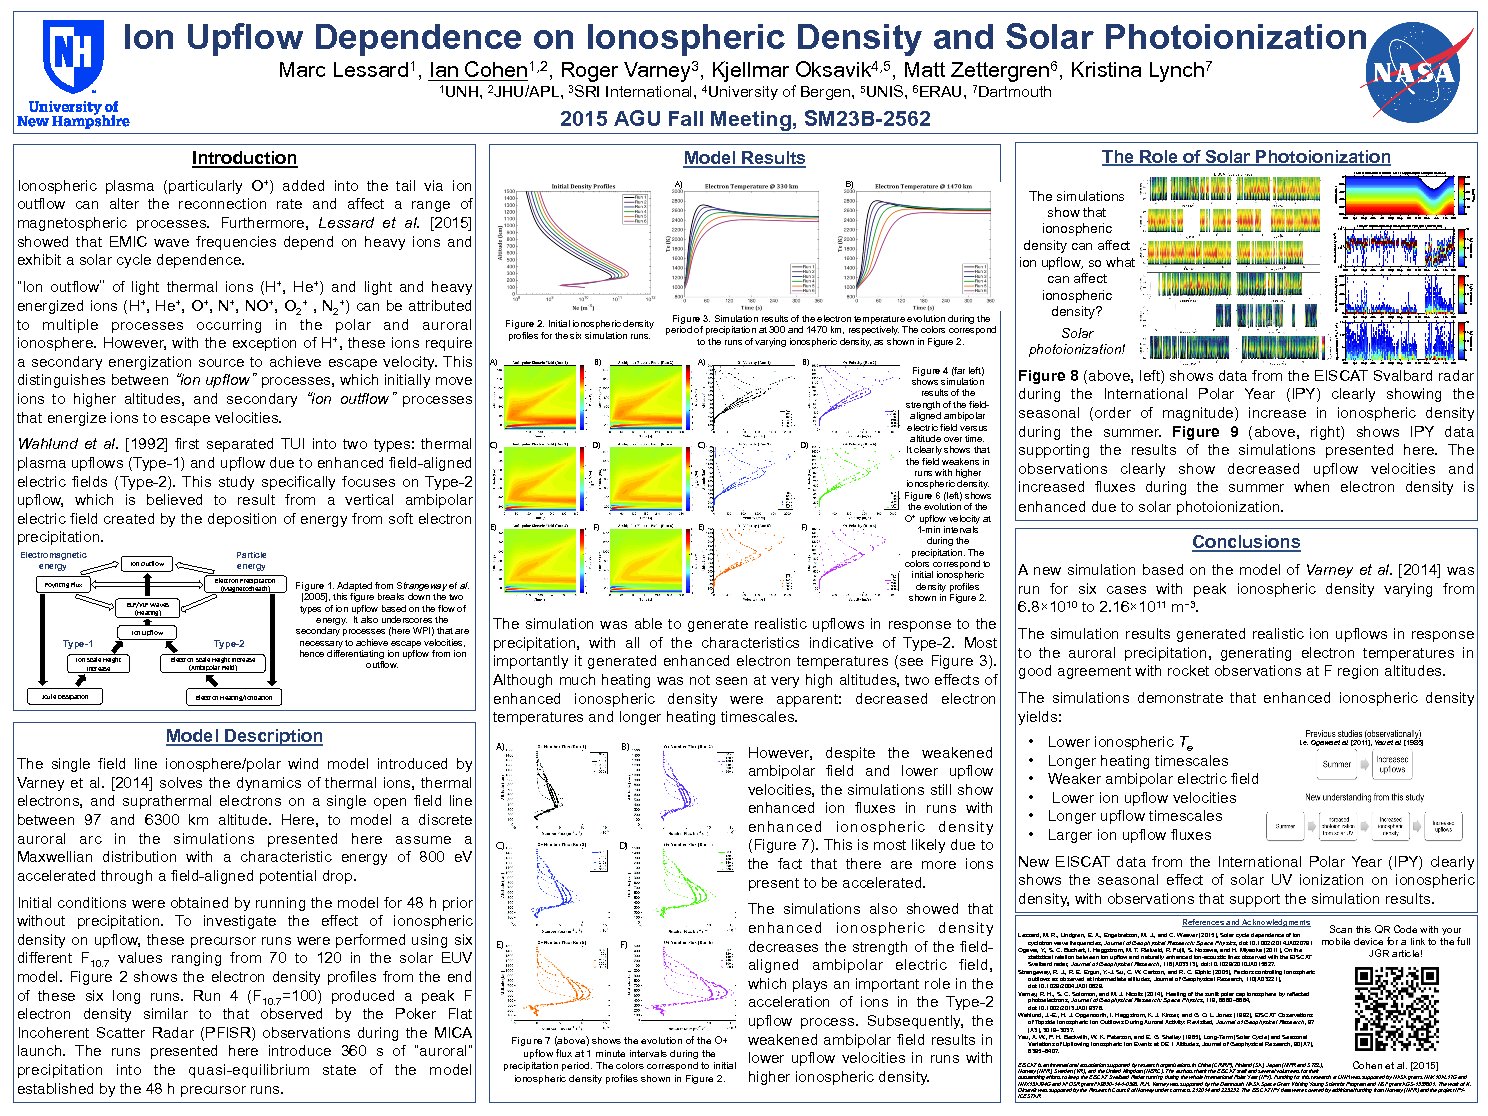 Ion Upflow Dependence On Ionospheric Density And Solar Photionization by dkenward